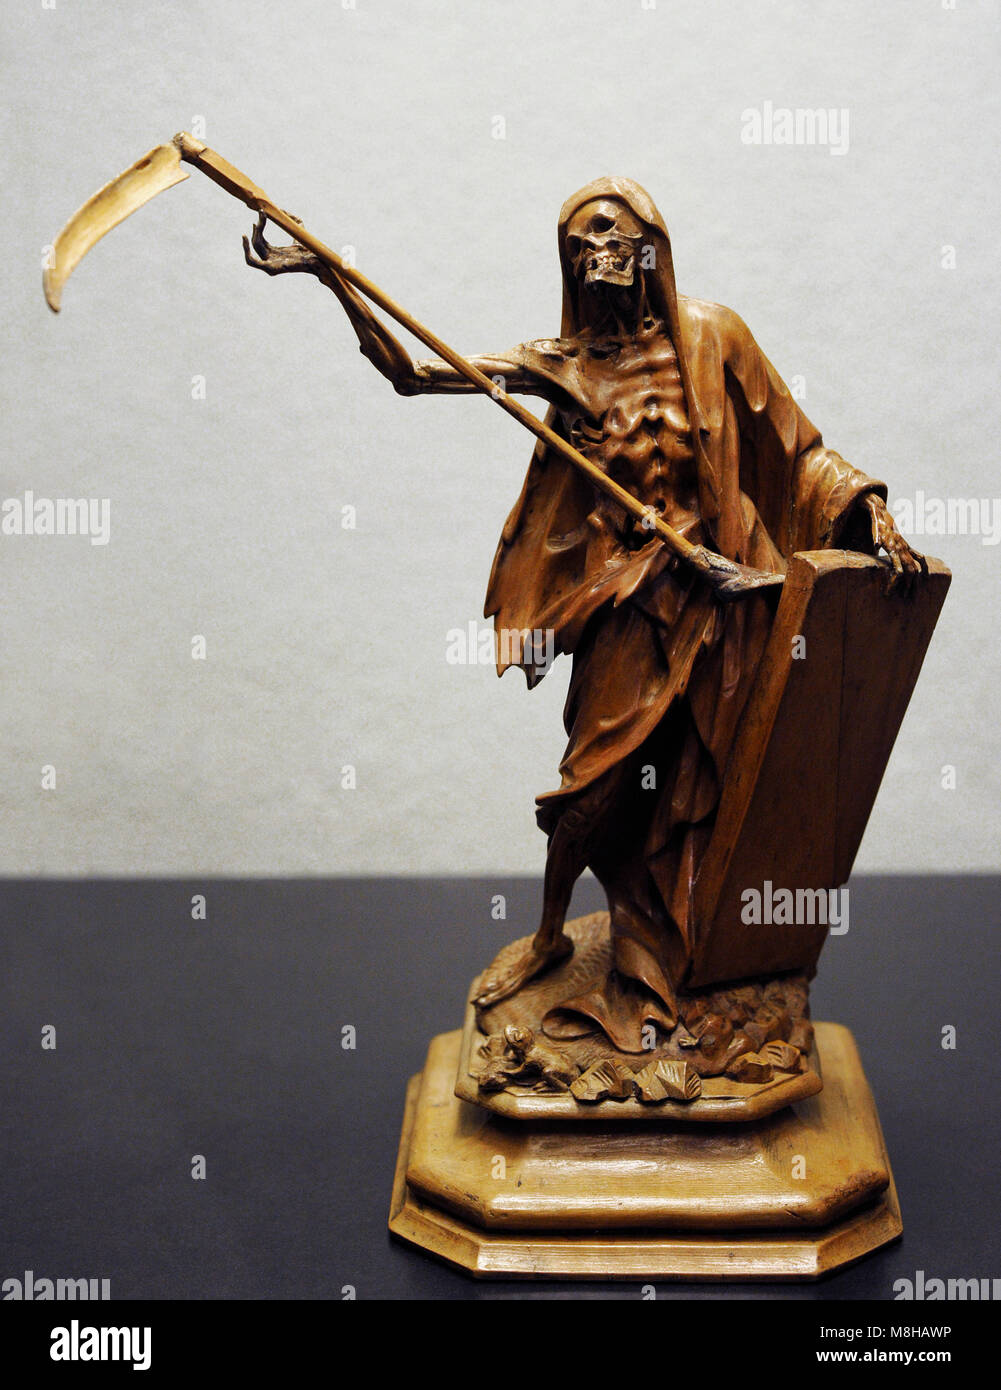 La morte come Grim Reaper. La Germania meridionale, 1750-1800. Legno. Museo Schnütgen. Colonia, Germania. Foto Stock